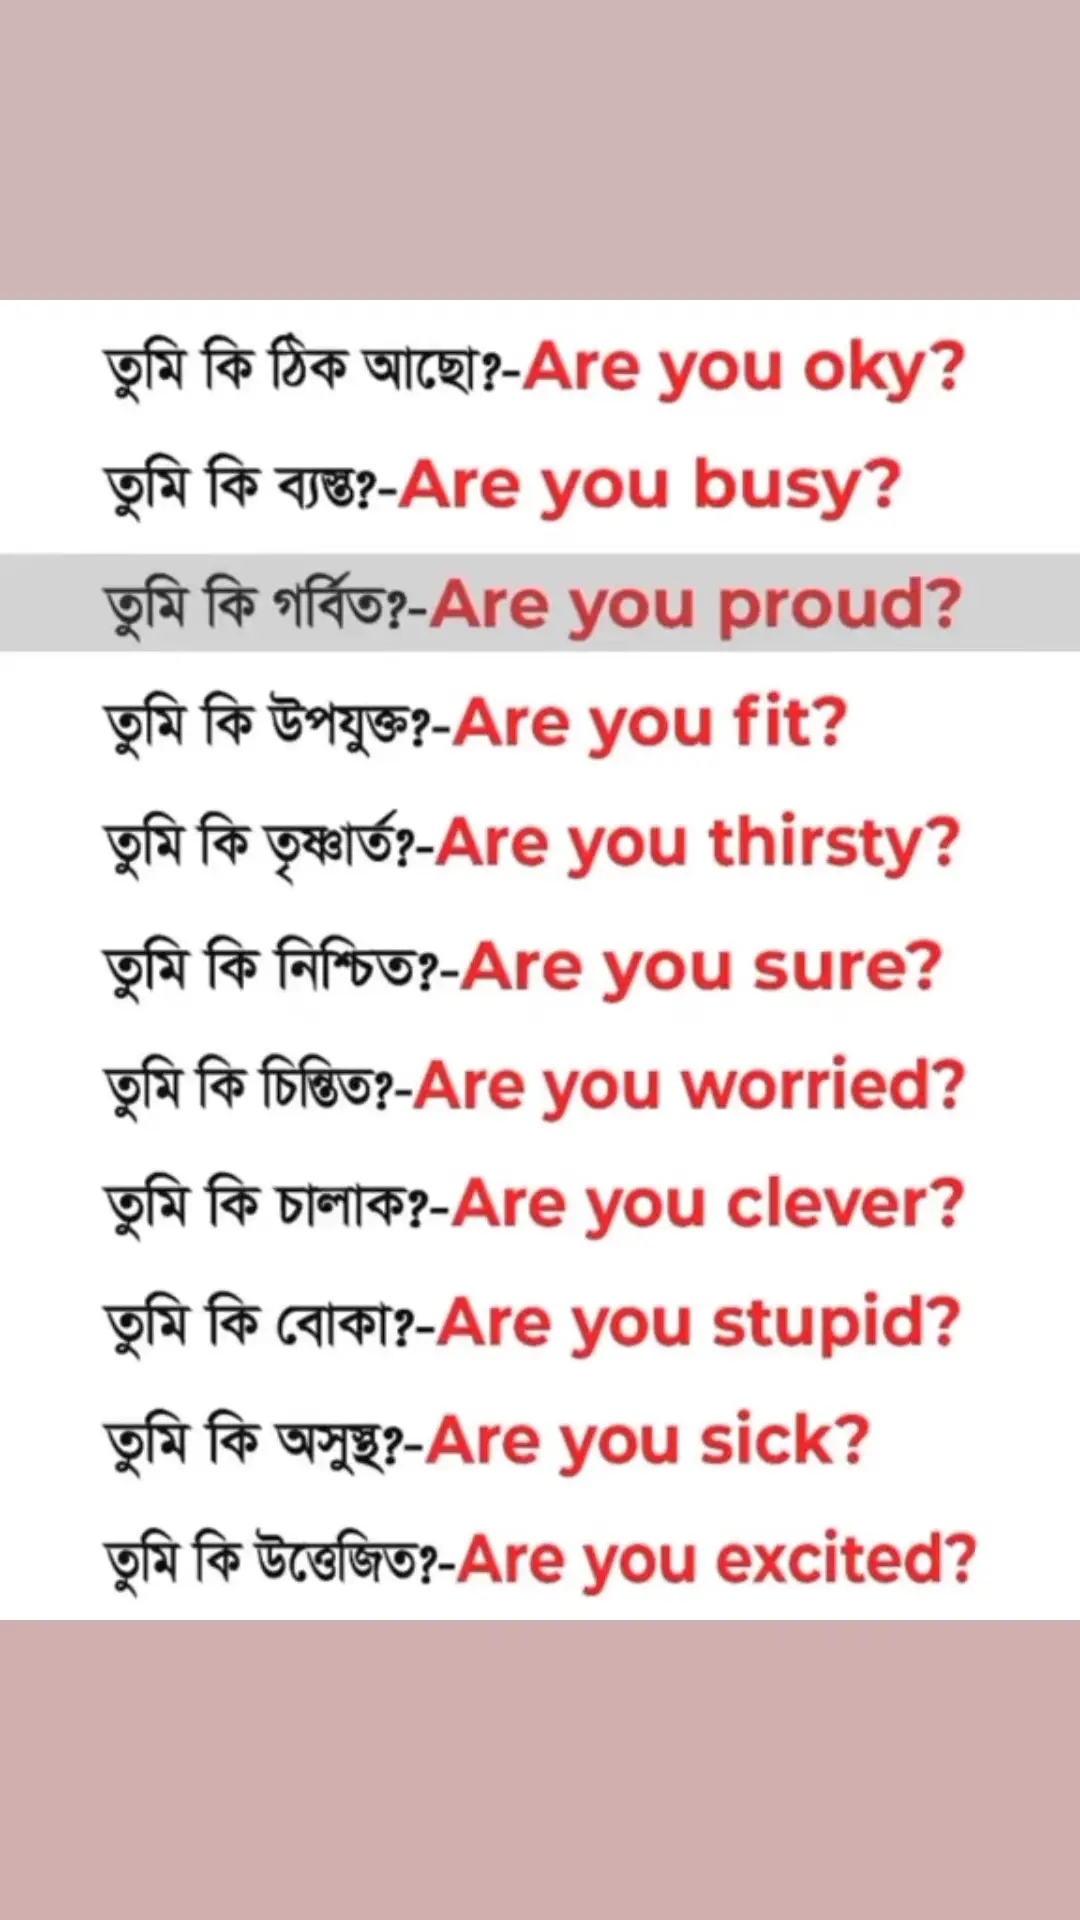 #foryoupage #foryou #englishlearning #bangladeshtiktok #bangladesh🇧🇩 #kolkata 